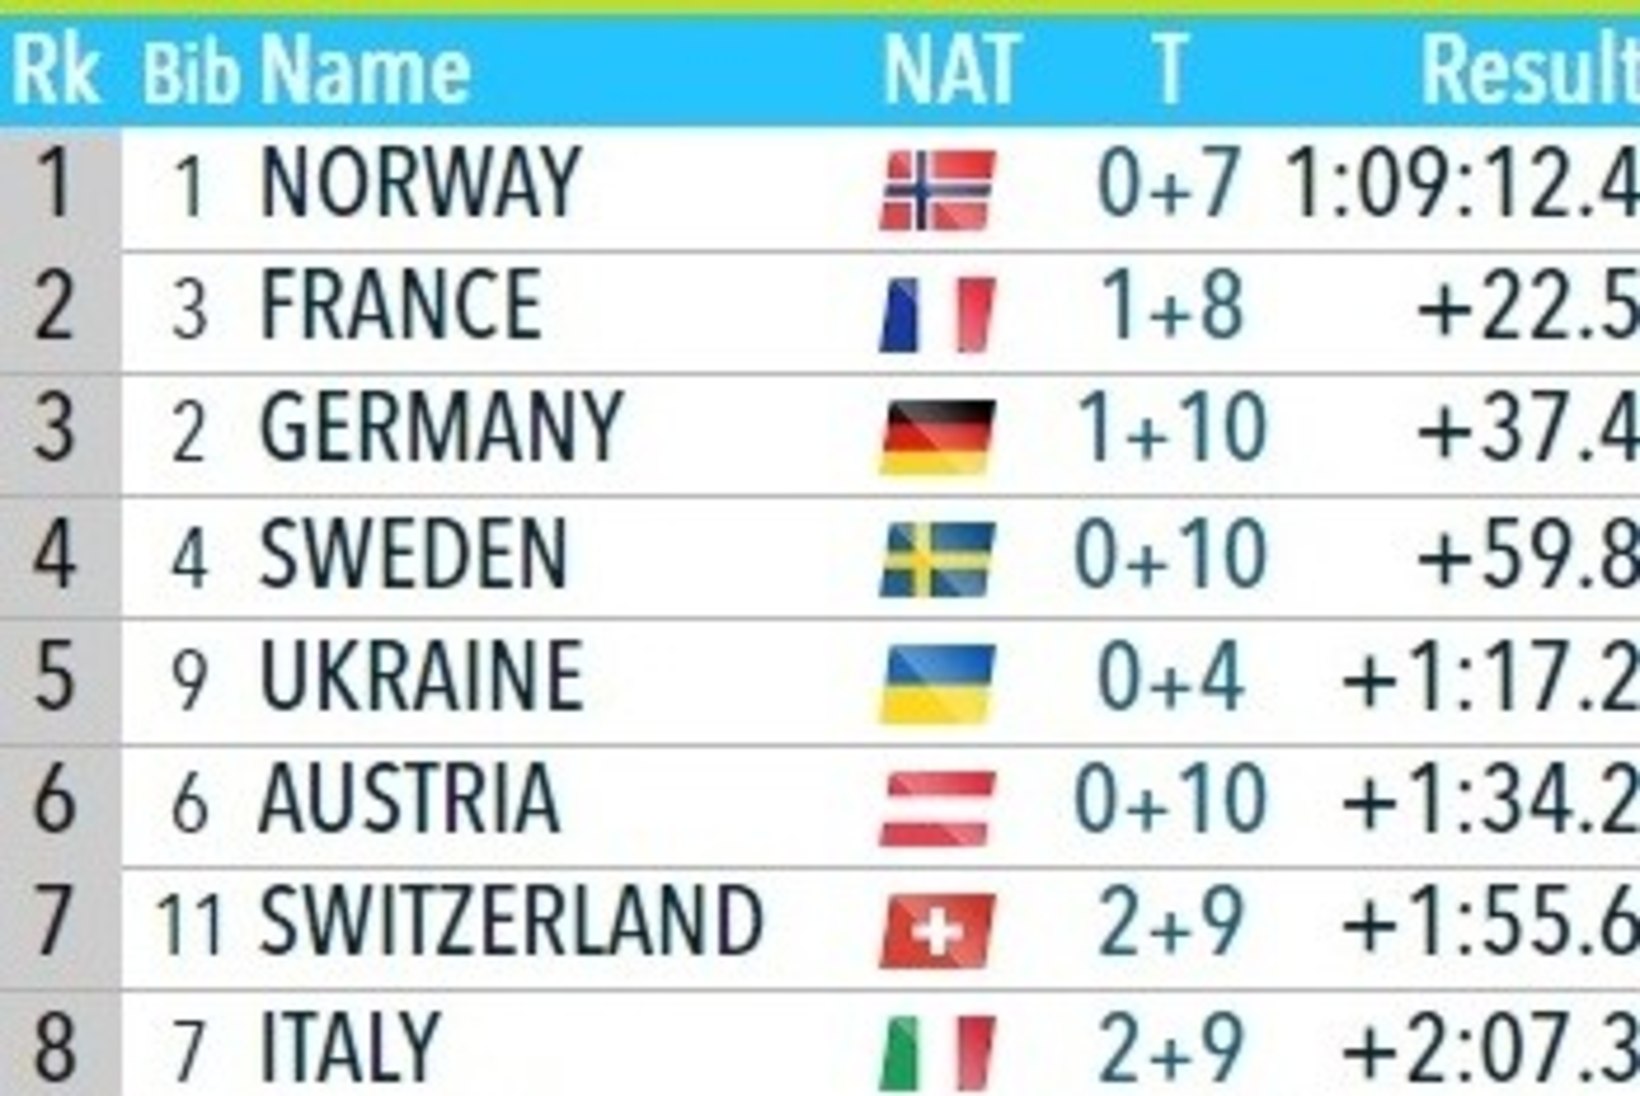 Norra võitis Östersundis mõlemad teatesõidud, Eesti mehed jõudsid vapralt finišisse